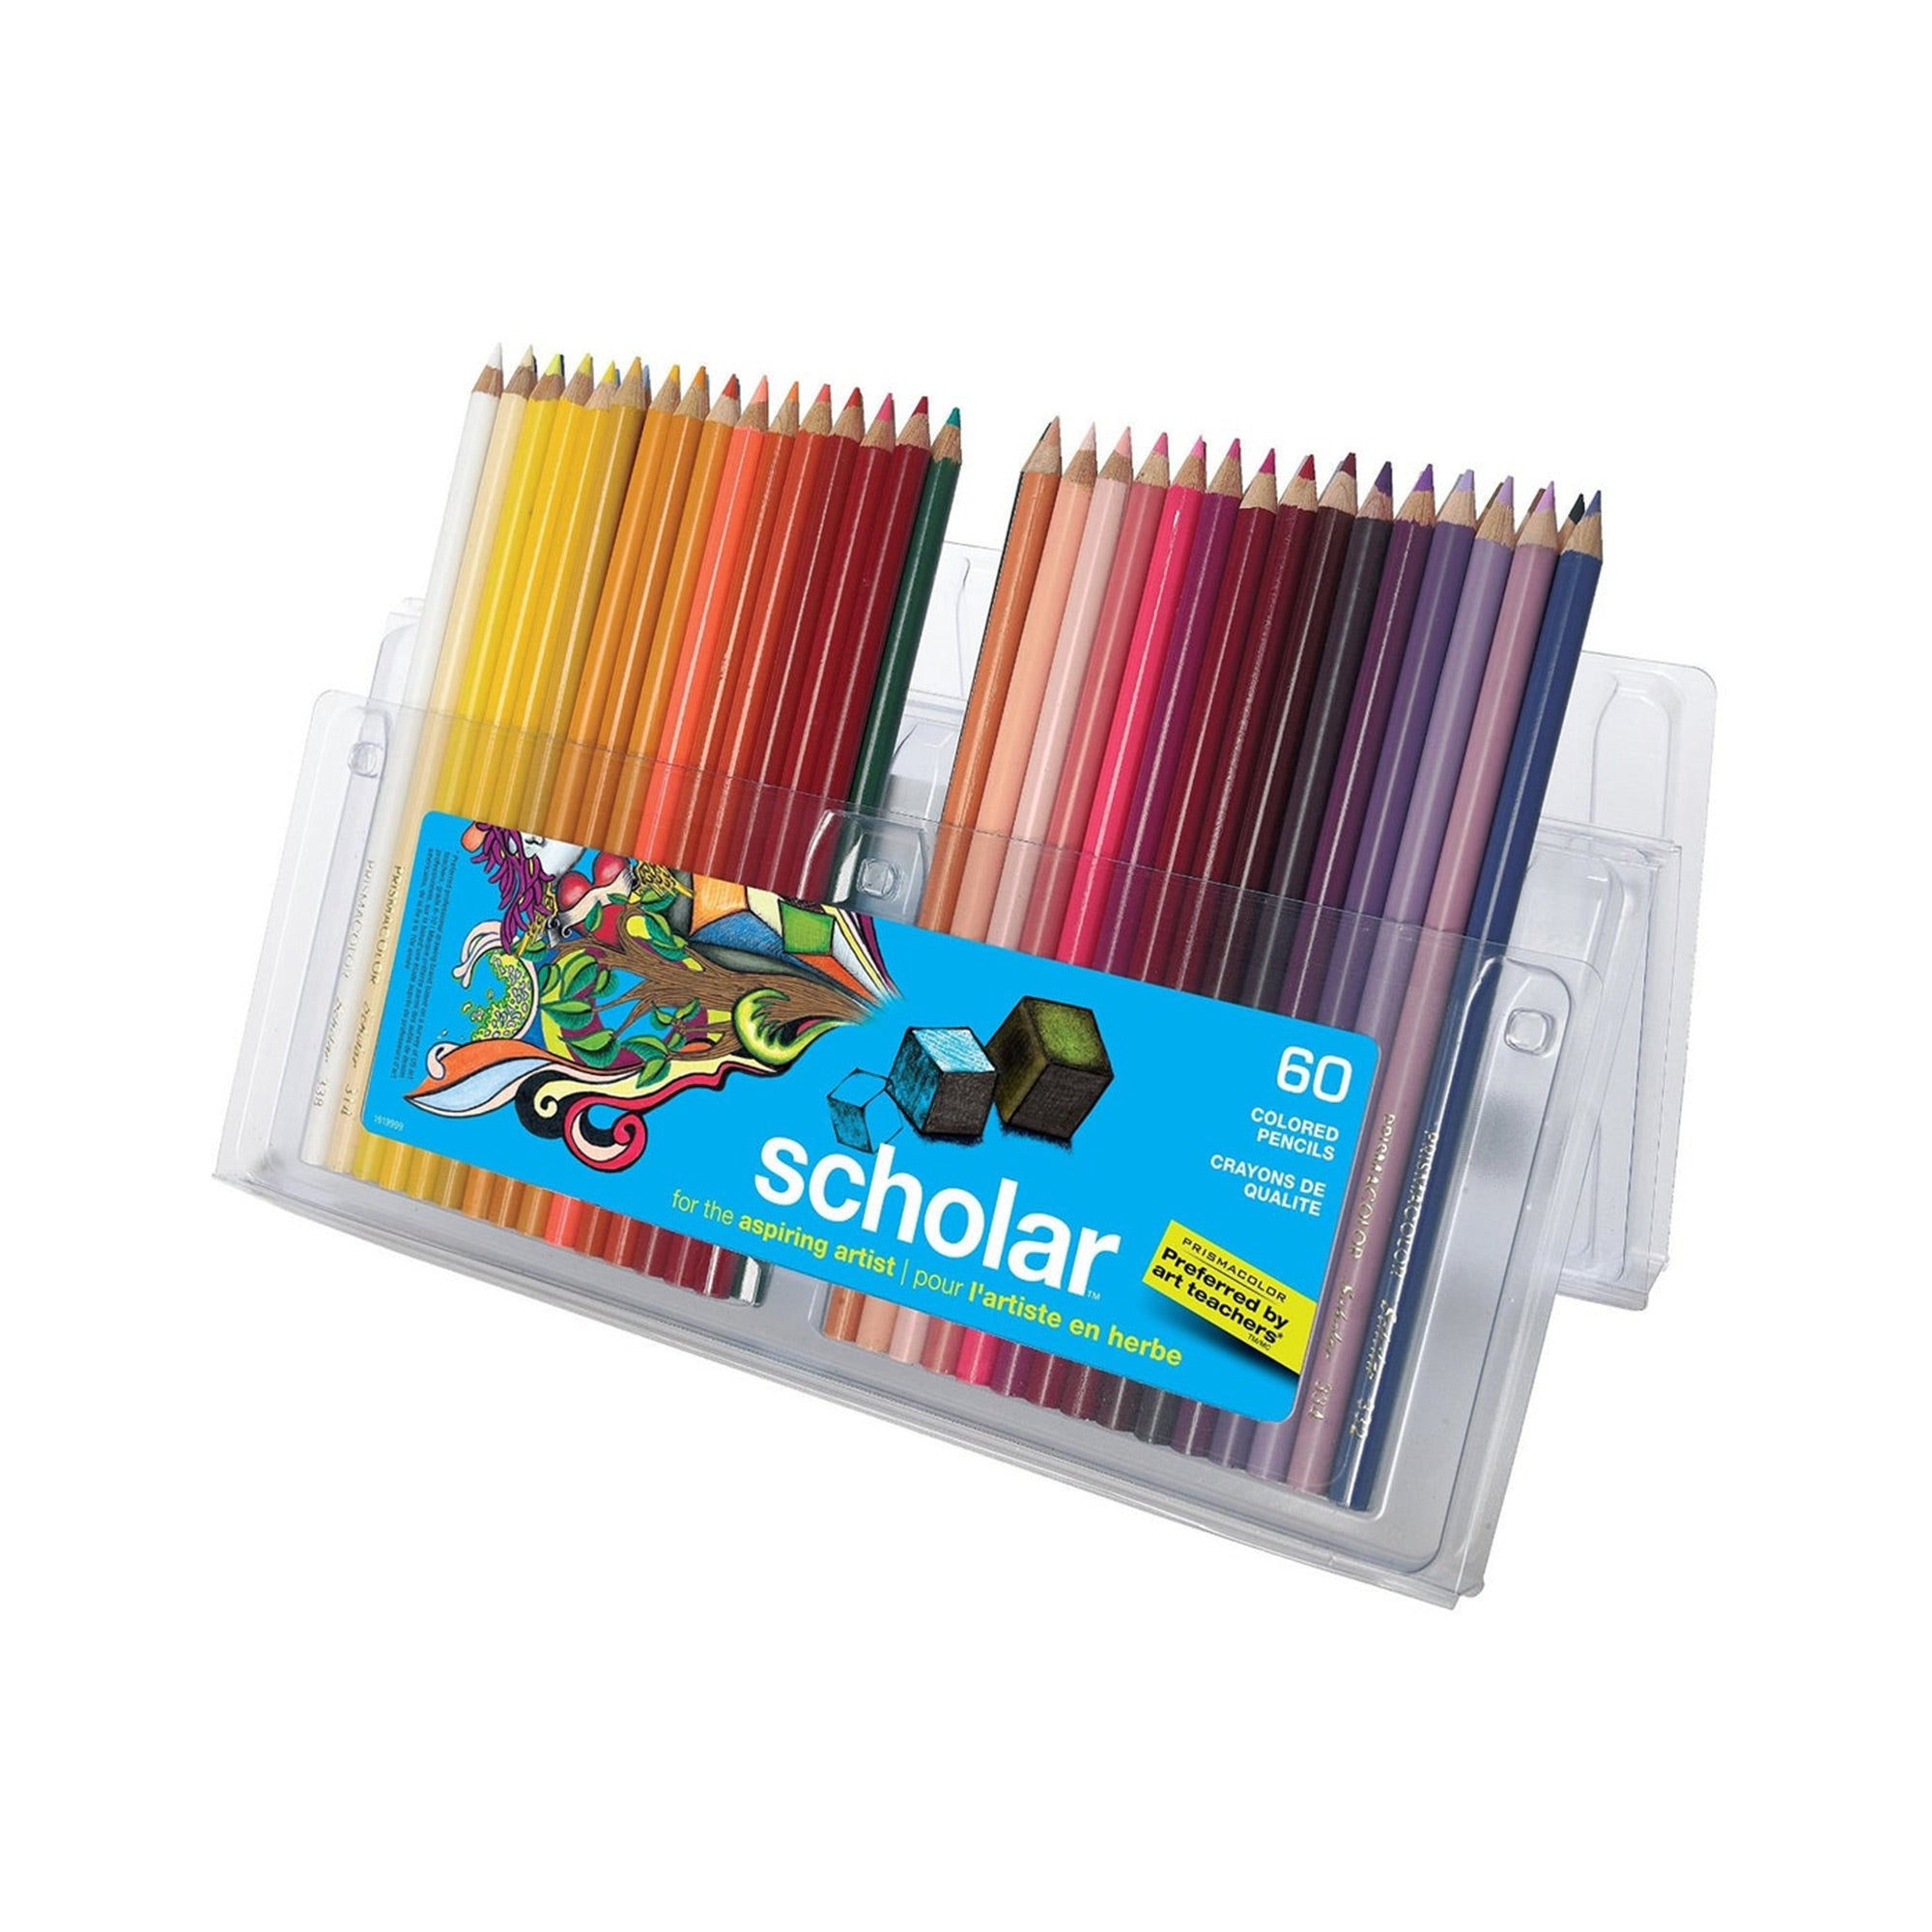 Les secrets des crayons de couleur